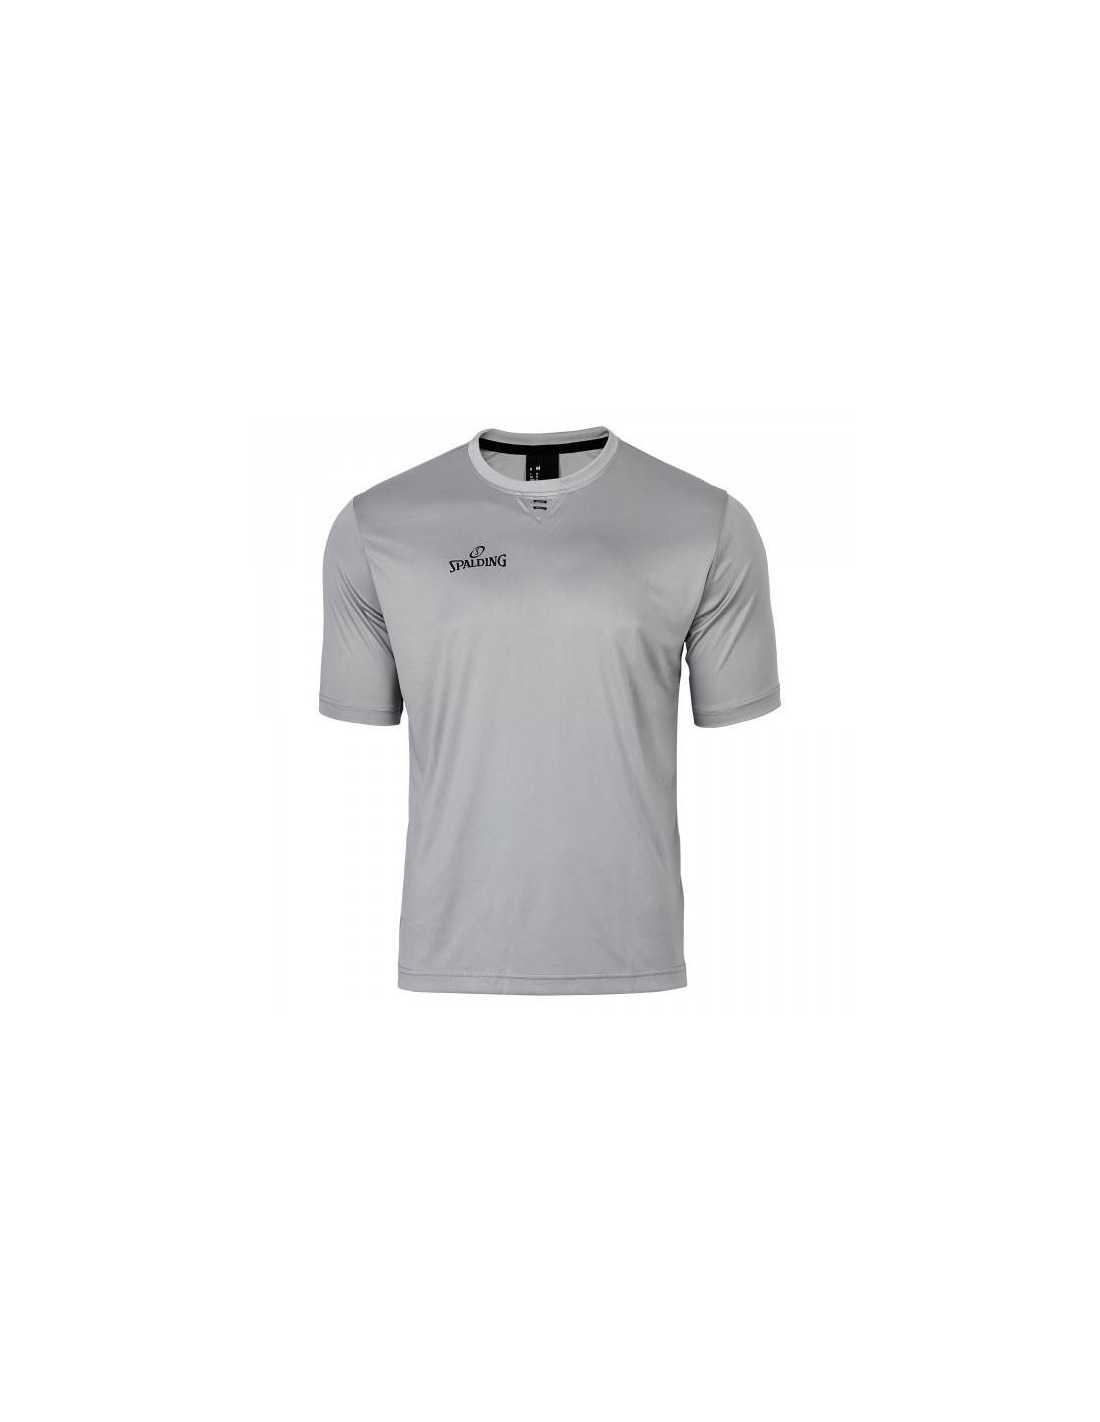 Referee Necessities Bundle – Camiseta de árbitro de rayas blancas y negras,  sombrero de paraguas y silbato de acero inoxidable con cordón – para